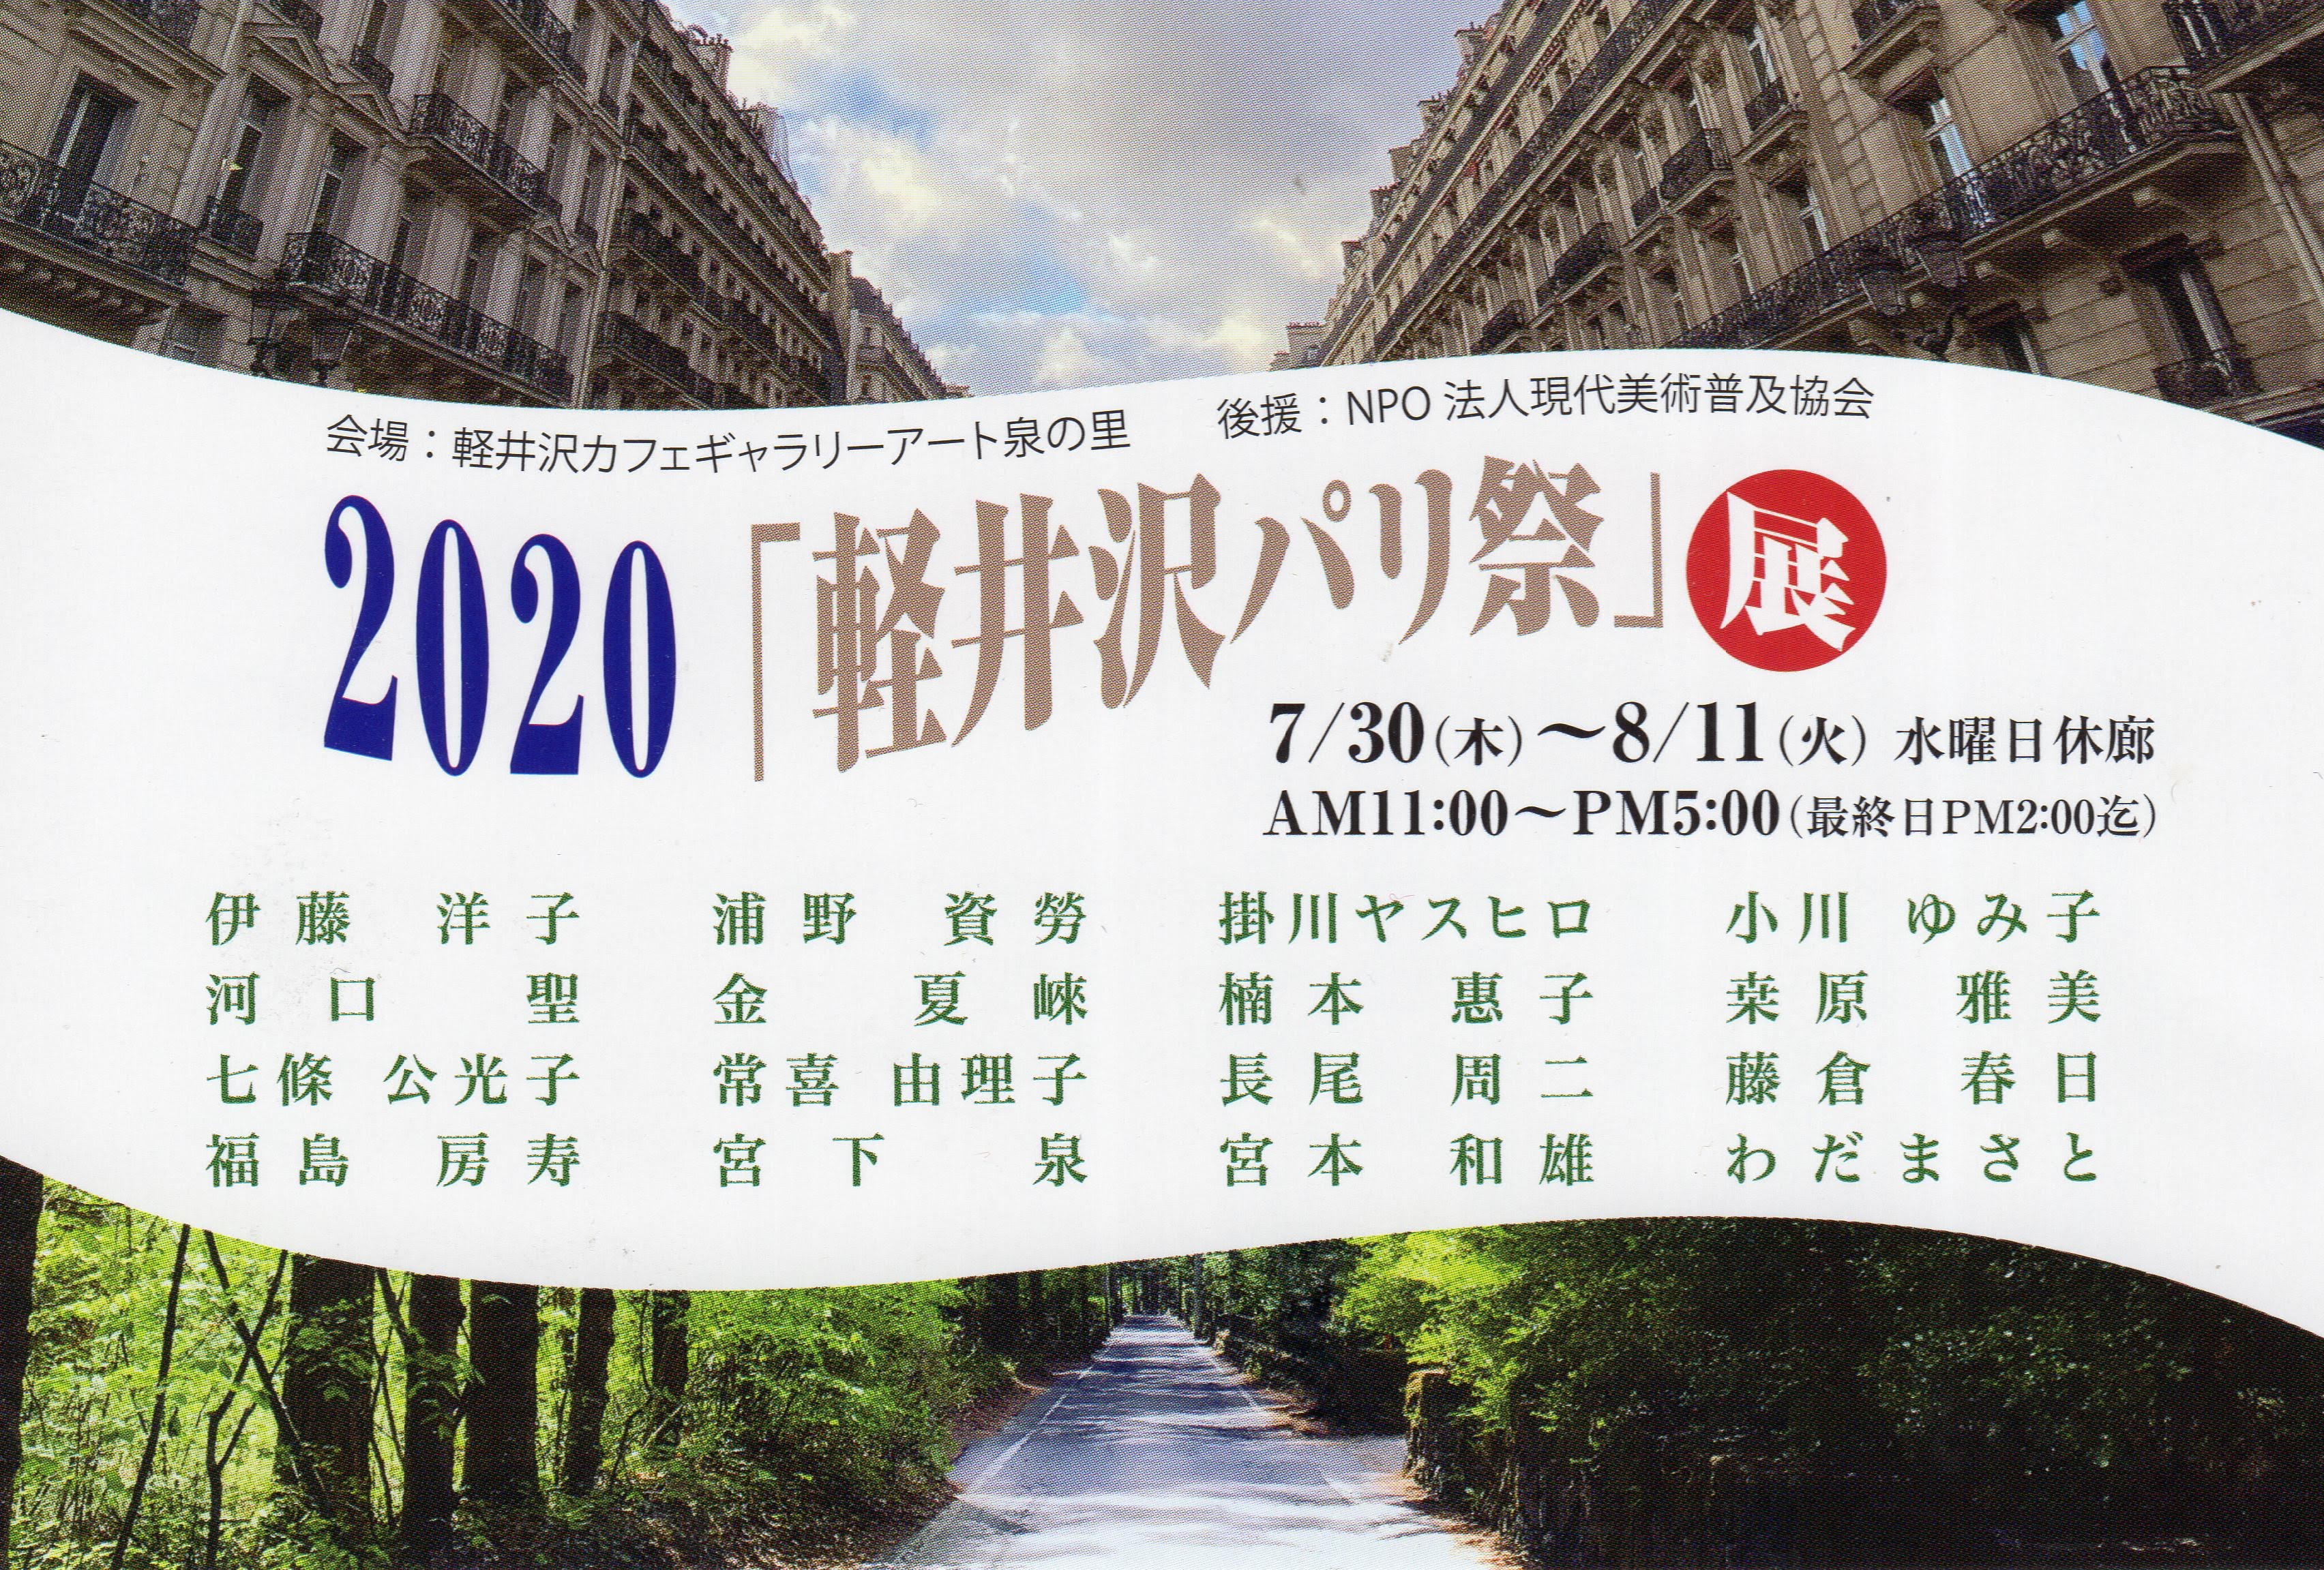 2020「軽井沢パリ祭」展 2020/07/30 Thu - 2020/08/11 Tue